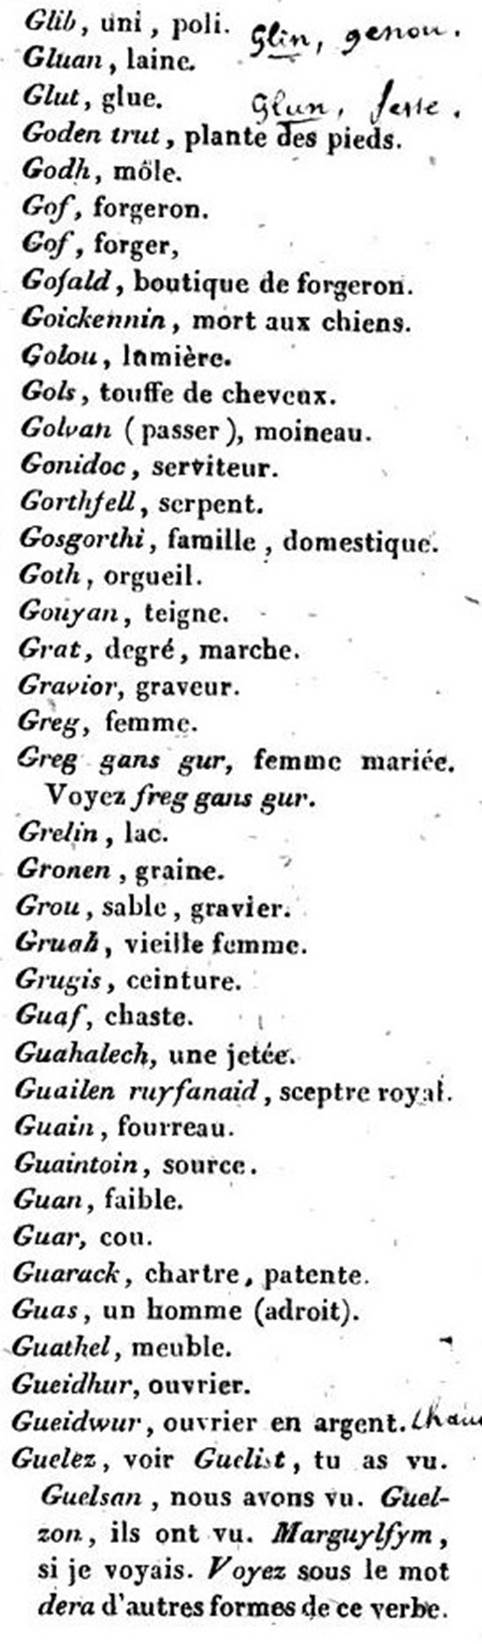 F3840c_antoine-matthieu-sionnet_1808-1856_langue-bretonne_430.jpg